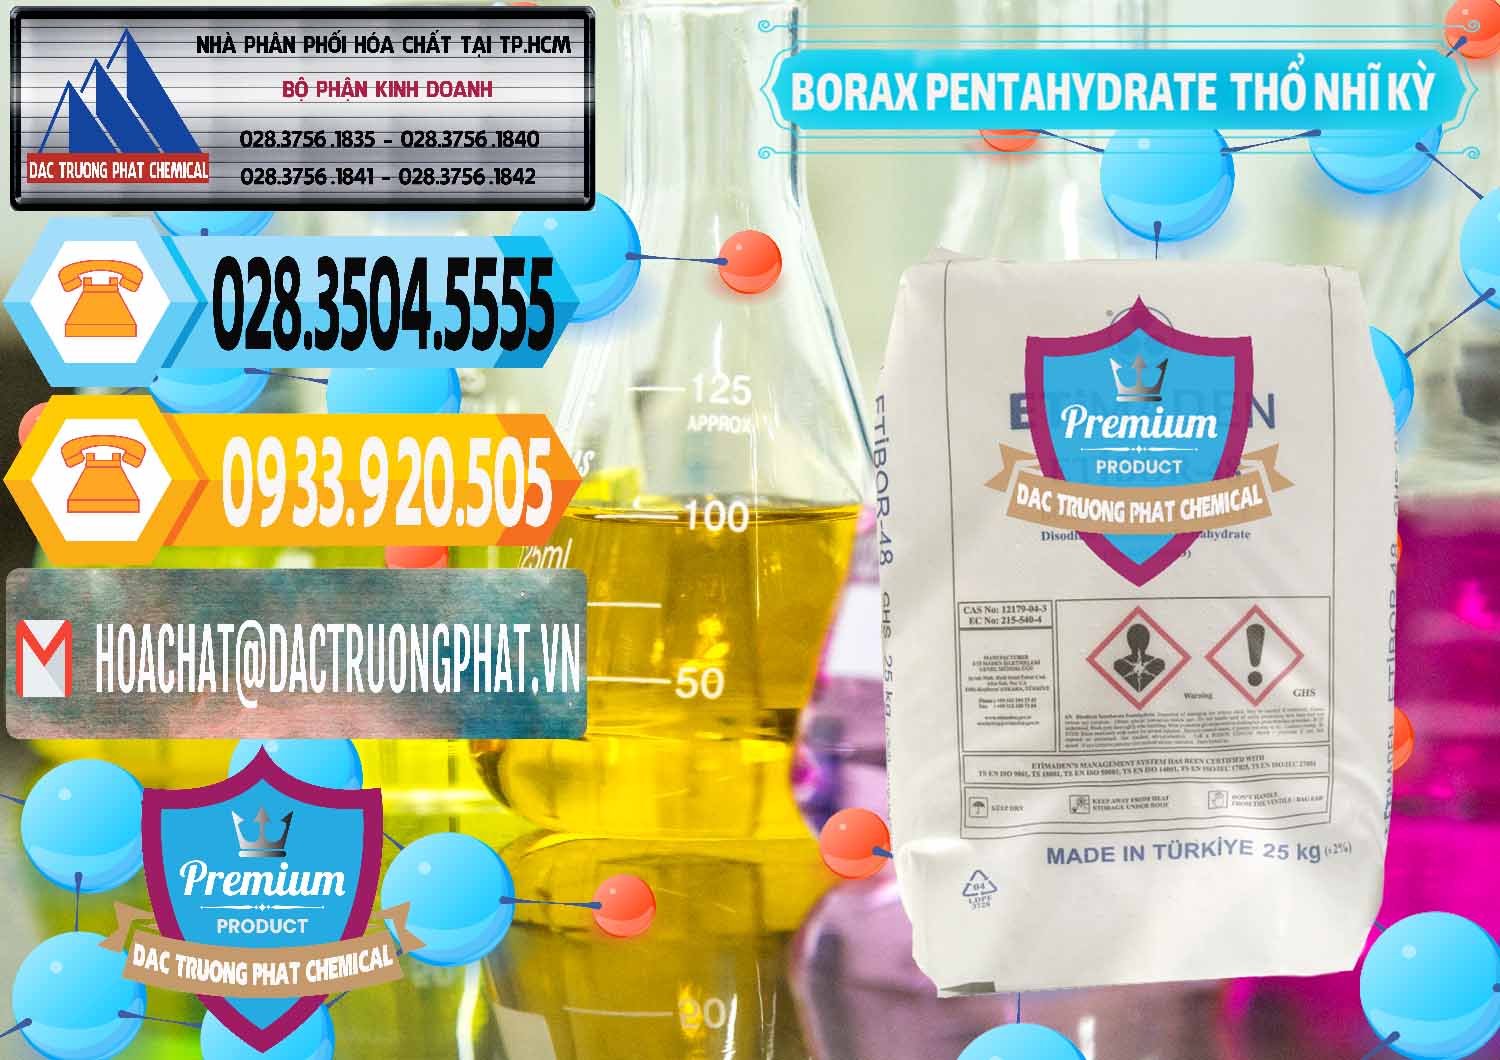 Đơn vị chuyên bán _ cung cấp Borax Pentahydrate Thổ Nhĩ Kỳ Turkey - 0431 - Đơn vị phân phối ( cung cấp ) hóa chất tại TP.HCM - hoachattayrua.net